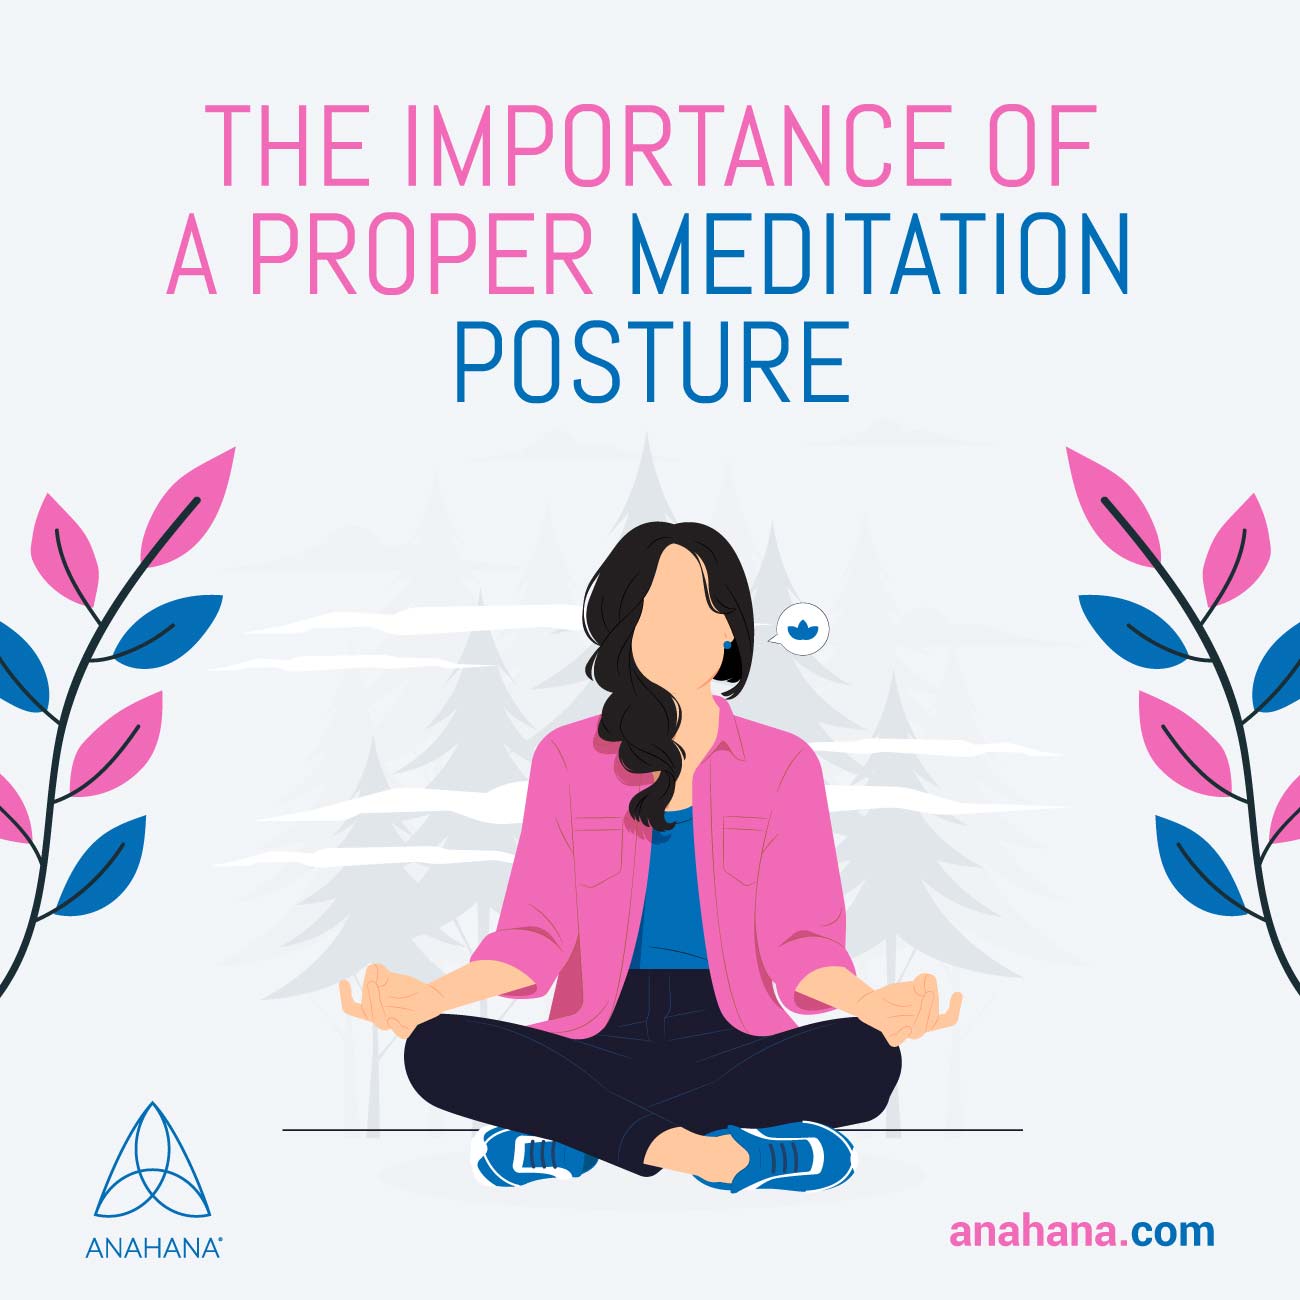 Posições de meditação - Mãos, costas, deitado, iniciantes